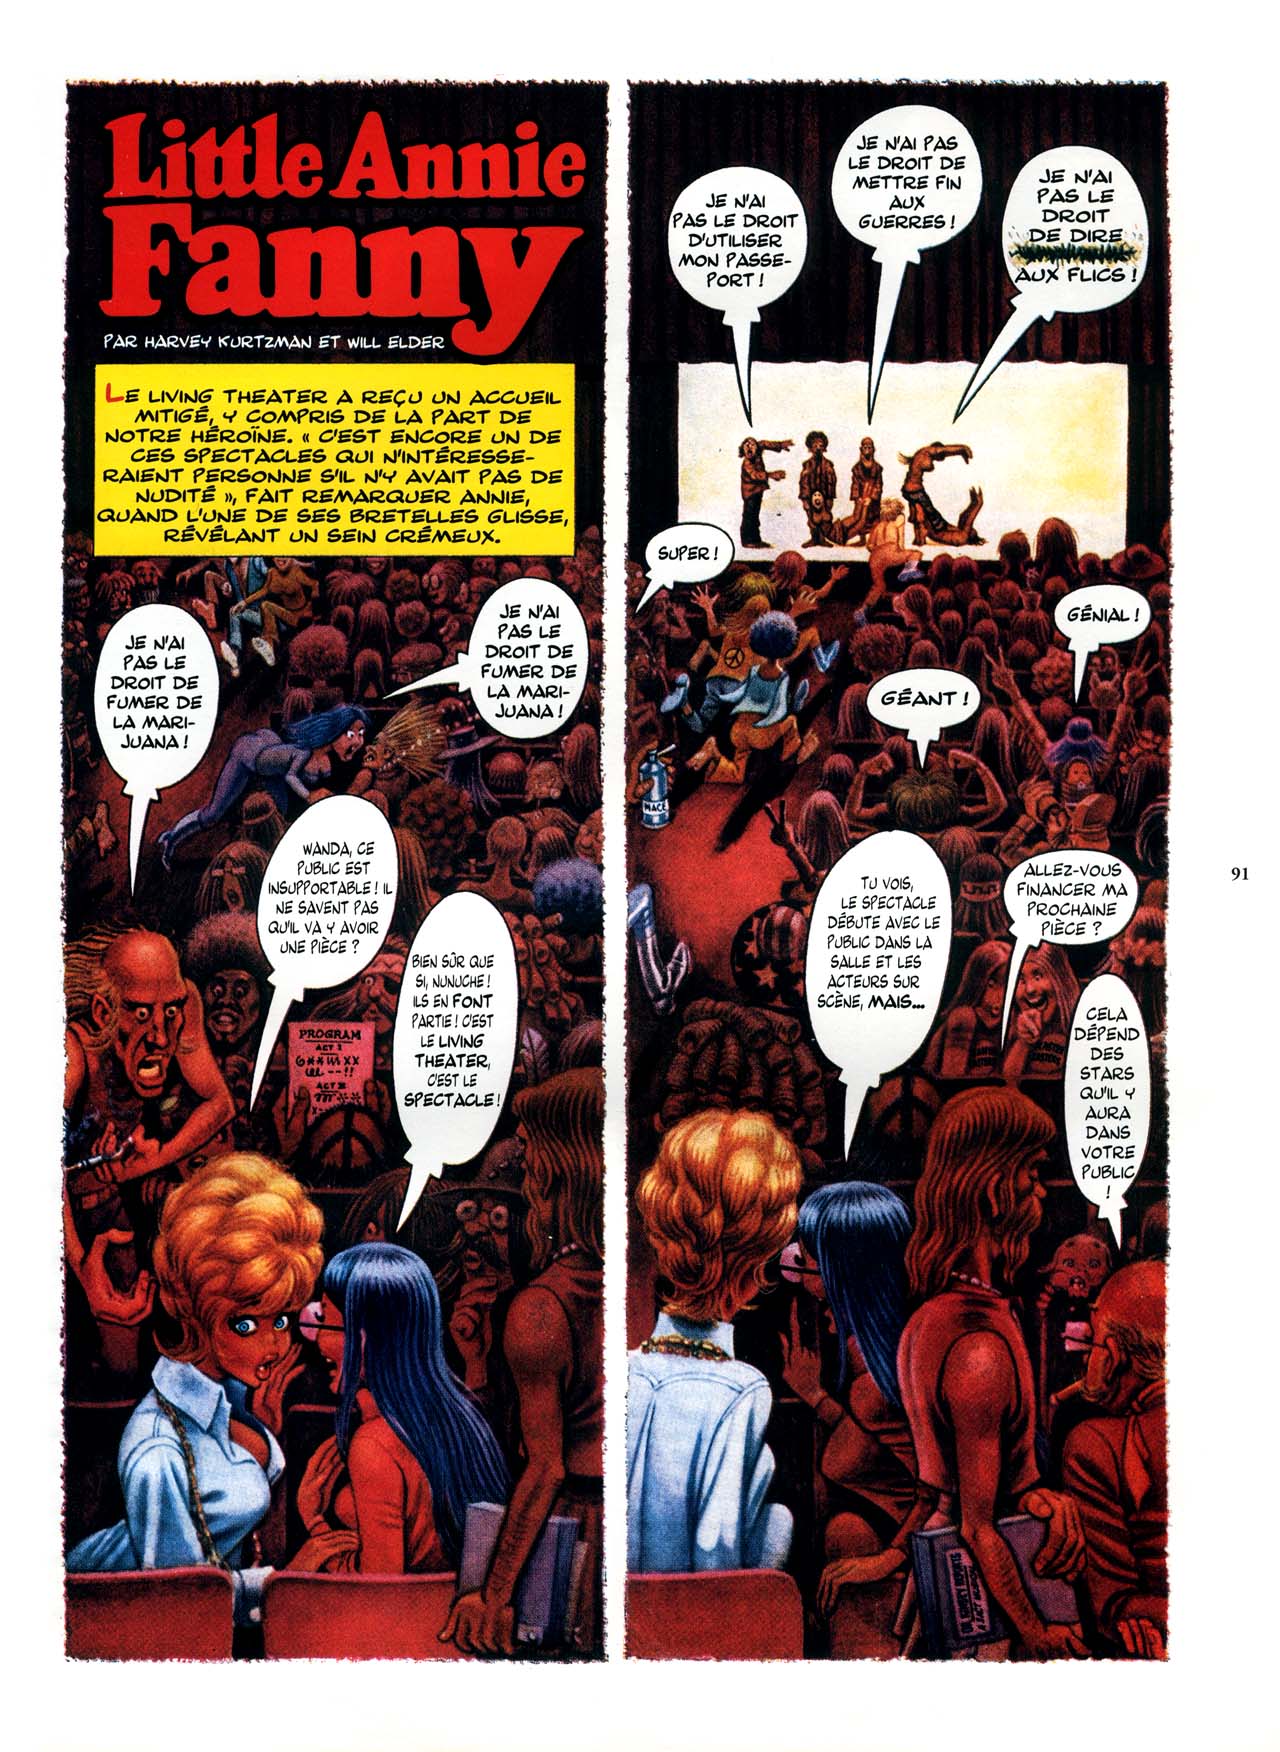 Playboys Little Annie Fanny Vol. 2 - 1965-1970 numero d'image 91